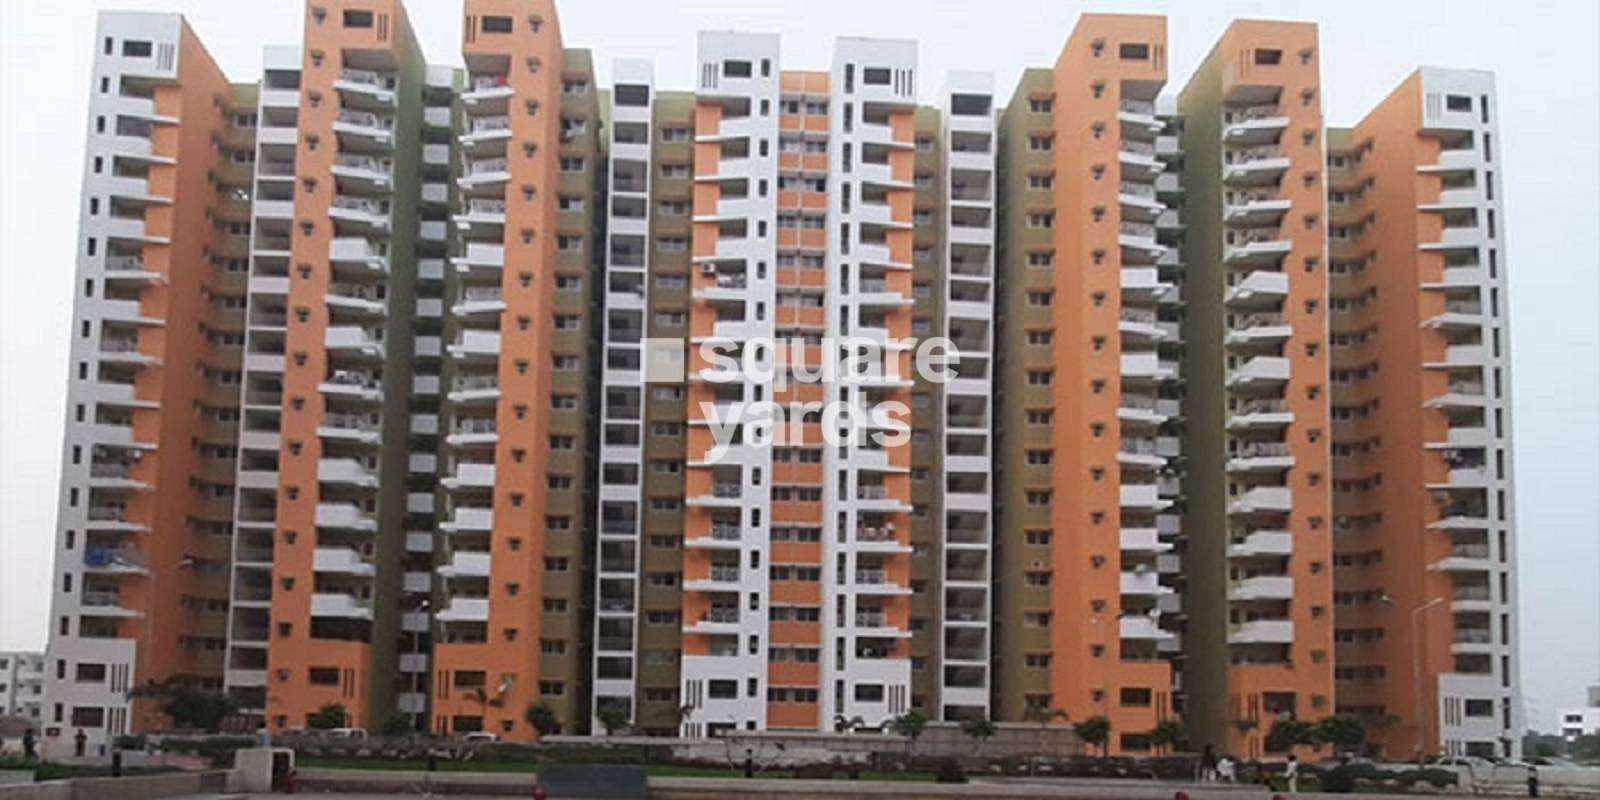 Sargam Apartment Cover Image